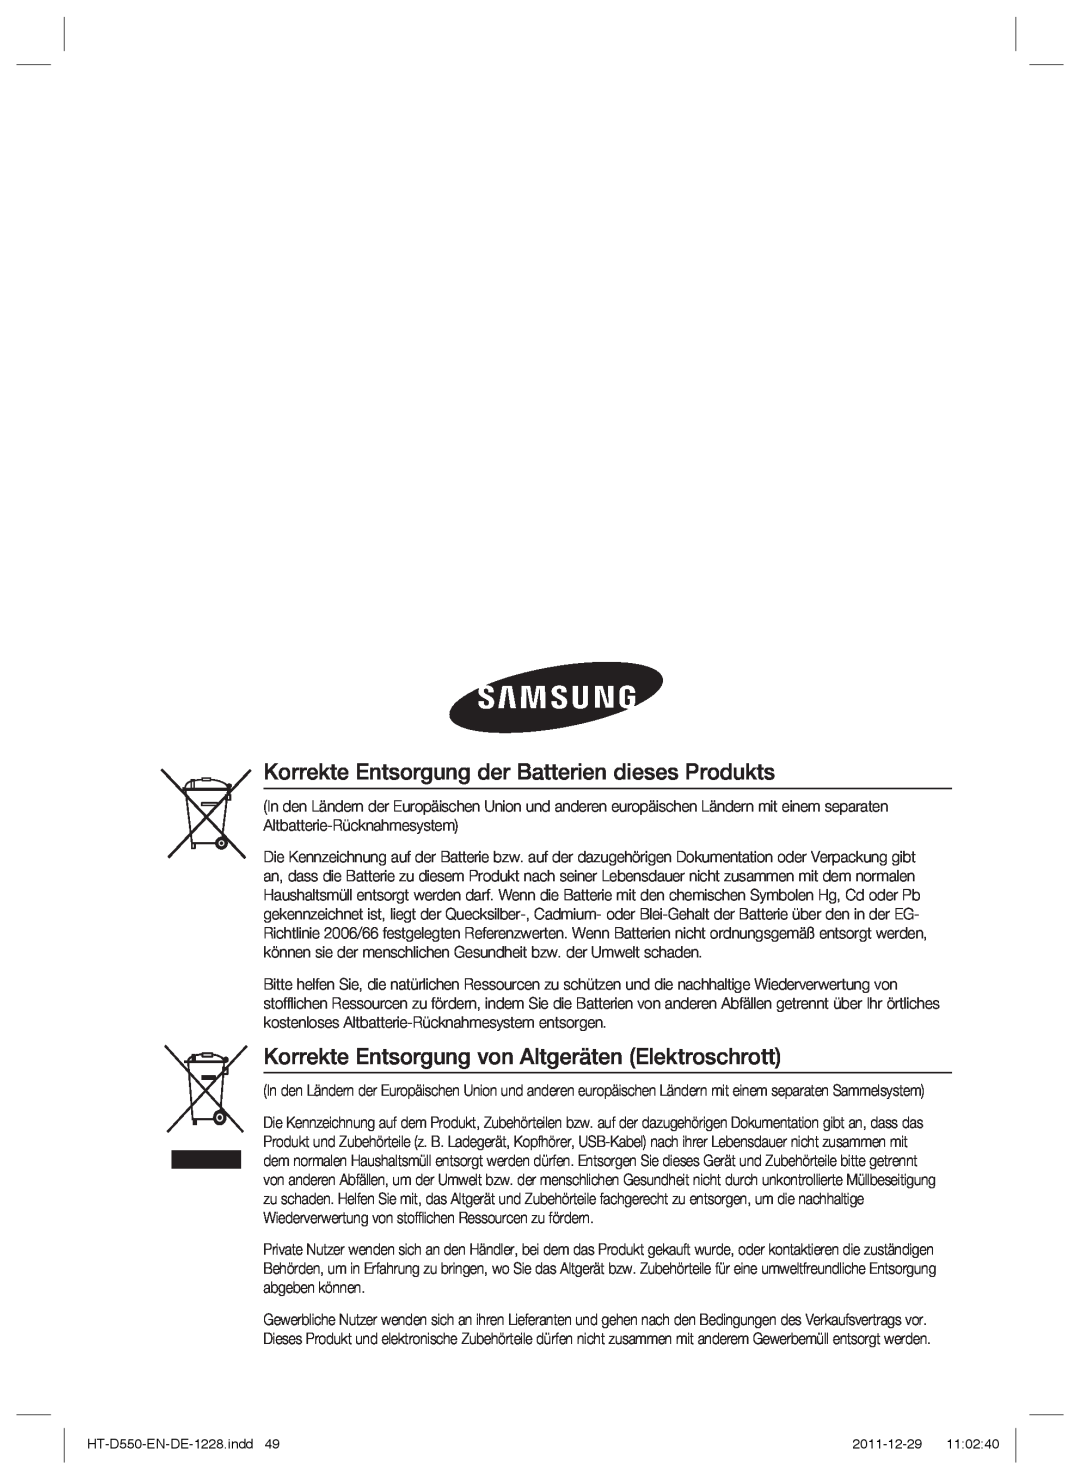 Samsung HT-D555/XE Korrekte Entsorgung der Batterien dieses Produkts, Korrekte Entsorgung von Altgeräten Elektroschrott 